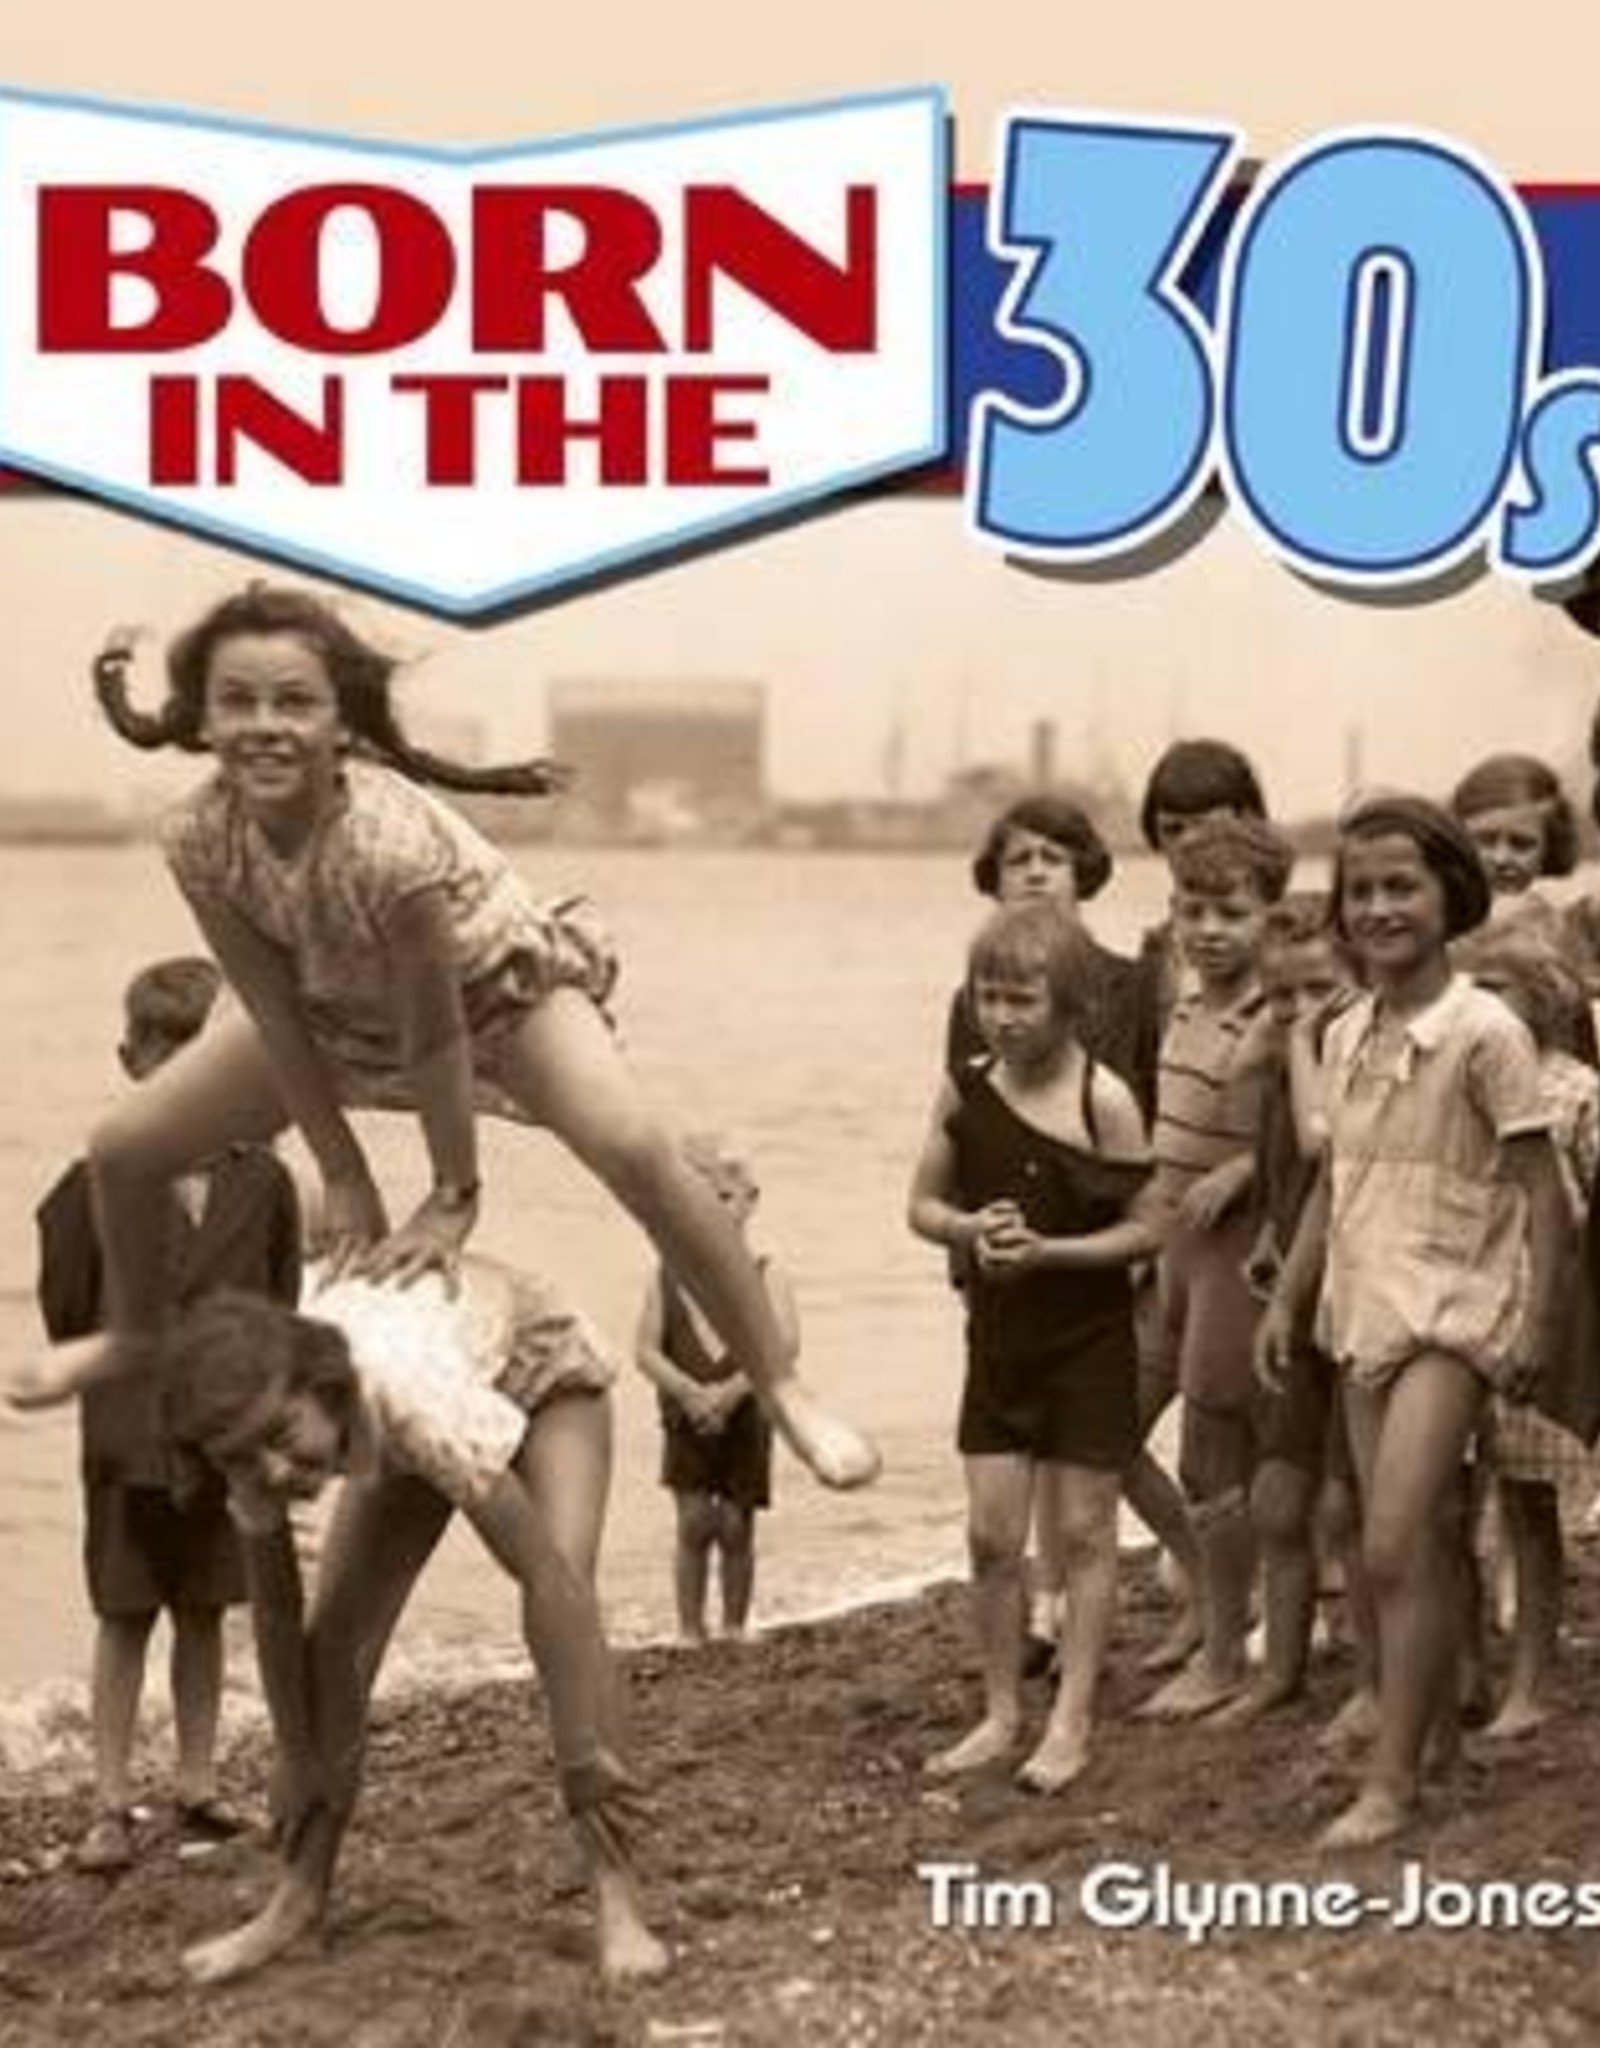 BORN IN THE 30S